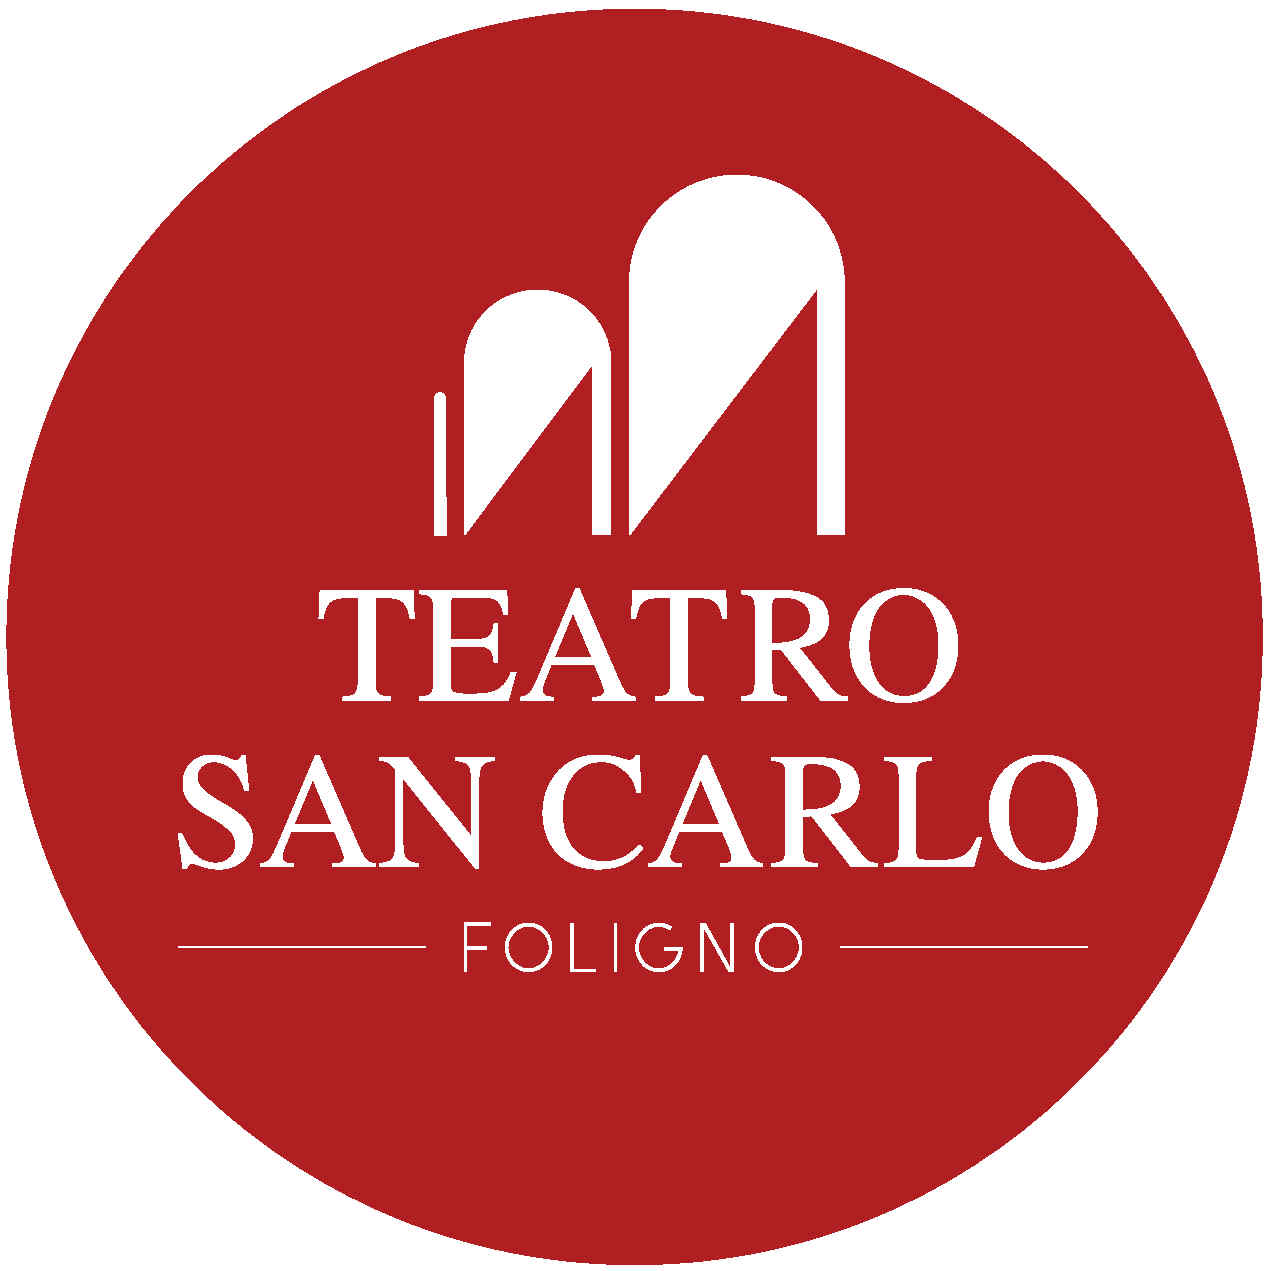 Teatro San Carlo Foligno